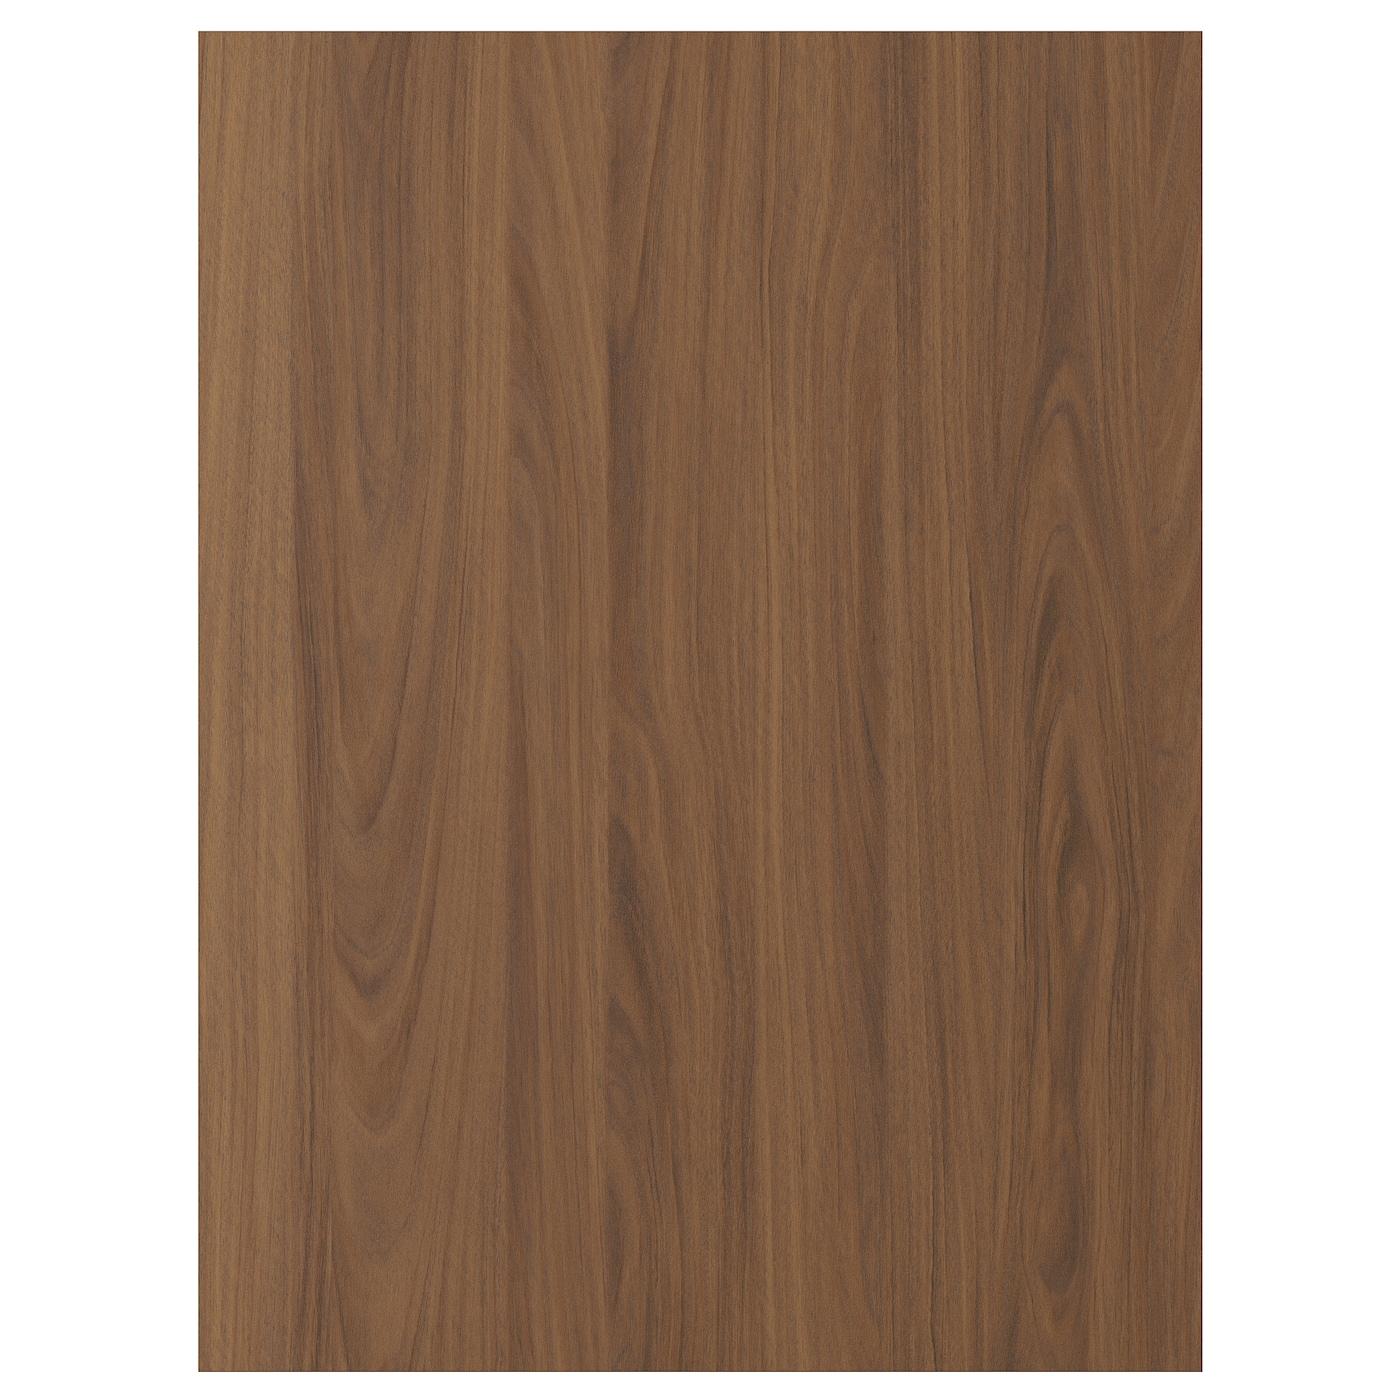 Дверца  - TISTORP IKEA/ ТИСТОРП ИКЕА,  80х60 см, коричневый орех